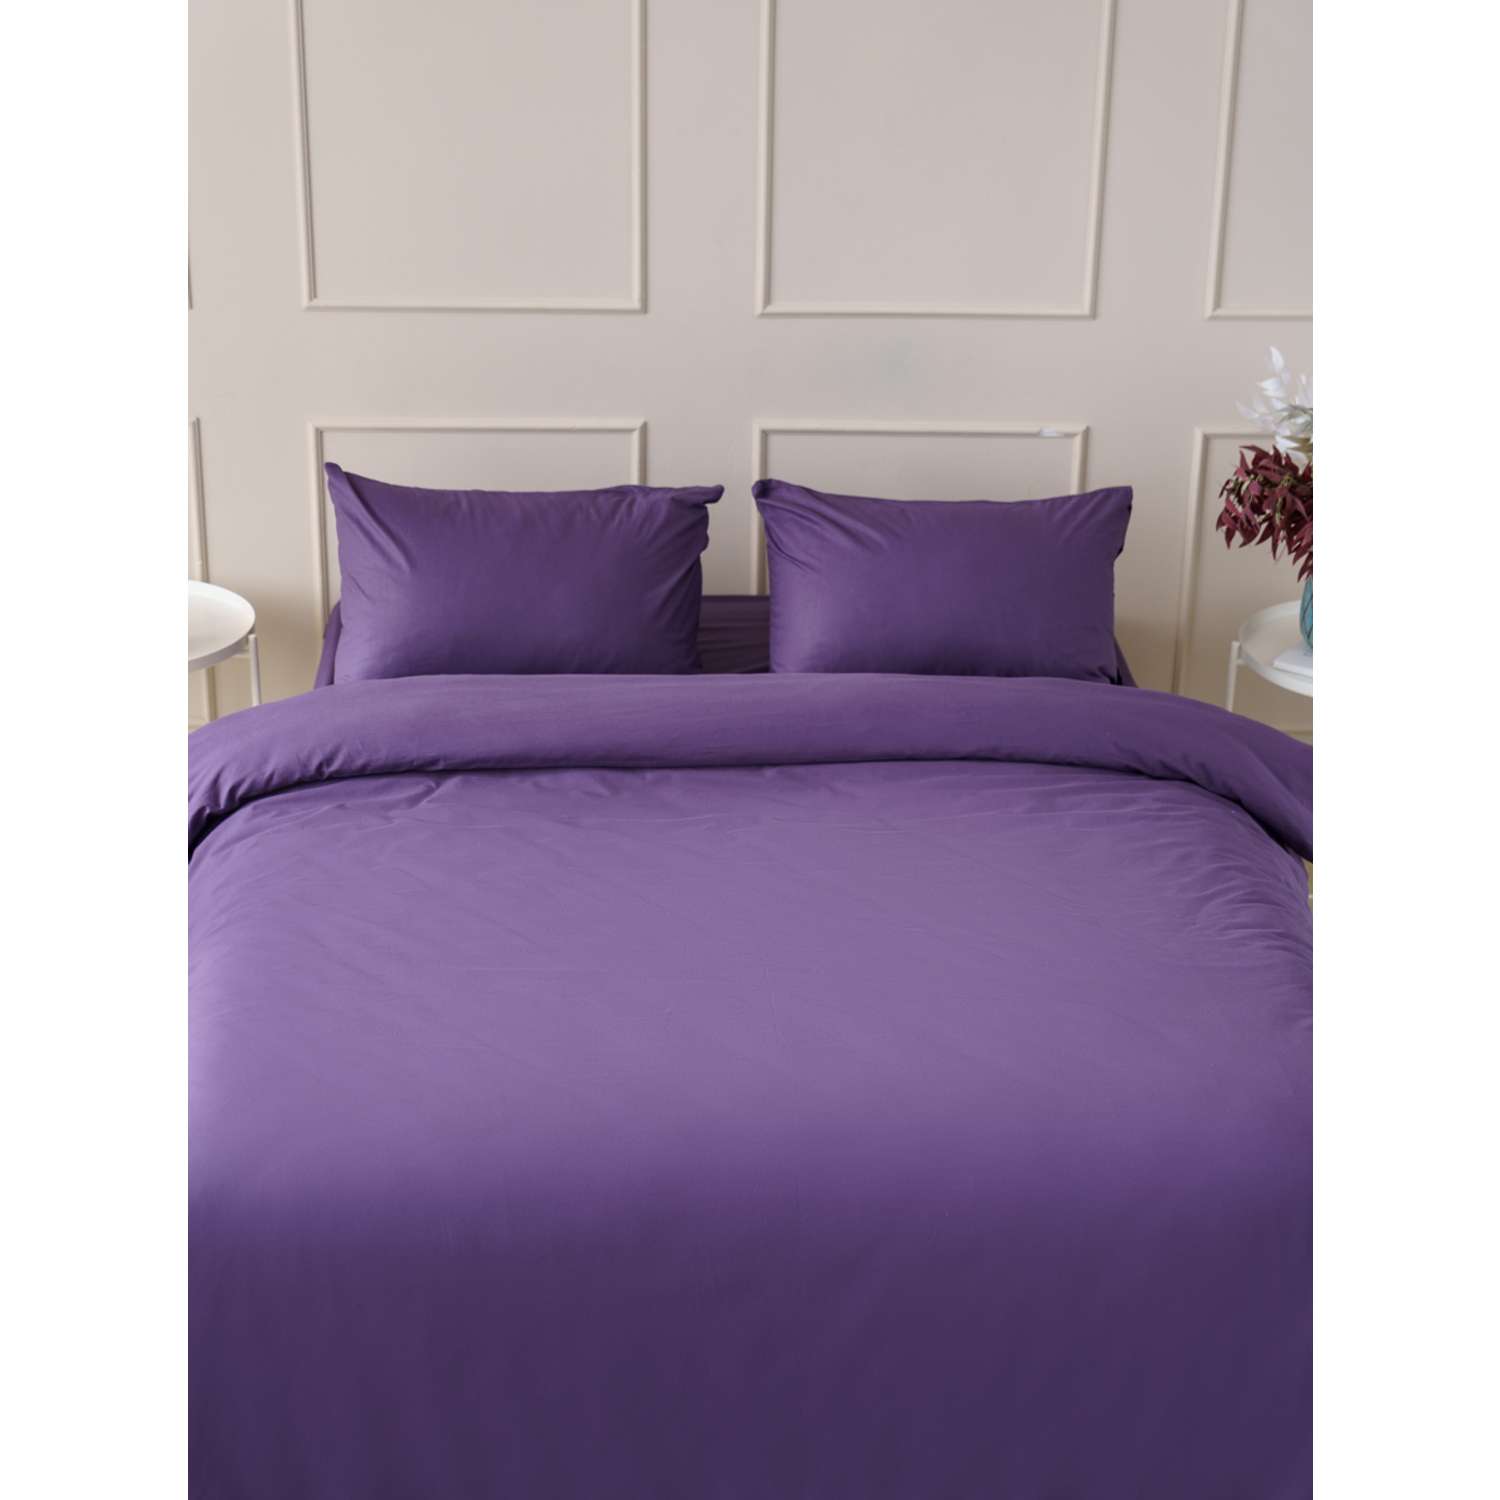 Комплект постельного белья IDEASON поплин 3 предмета 1.5 сп. фиолетовый - фото 7